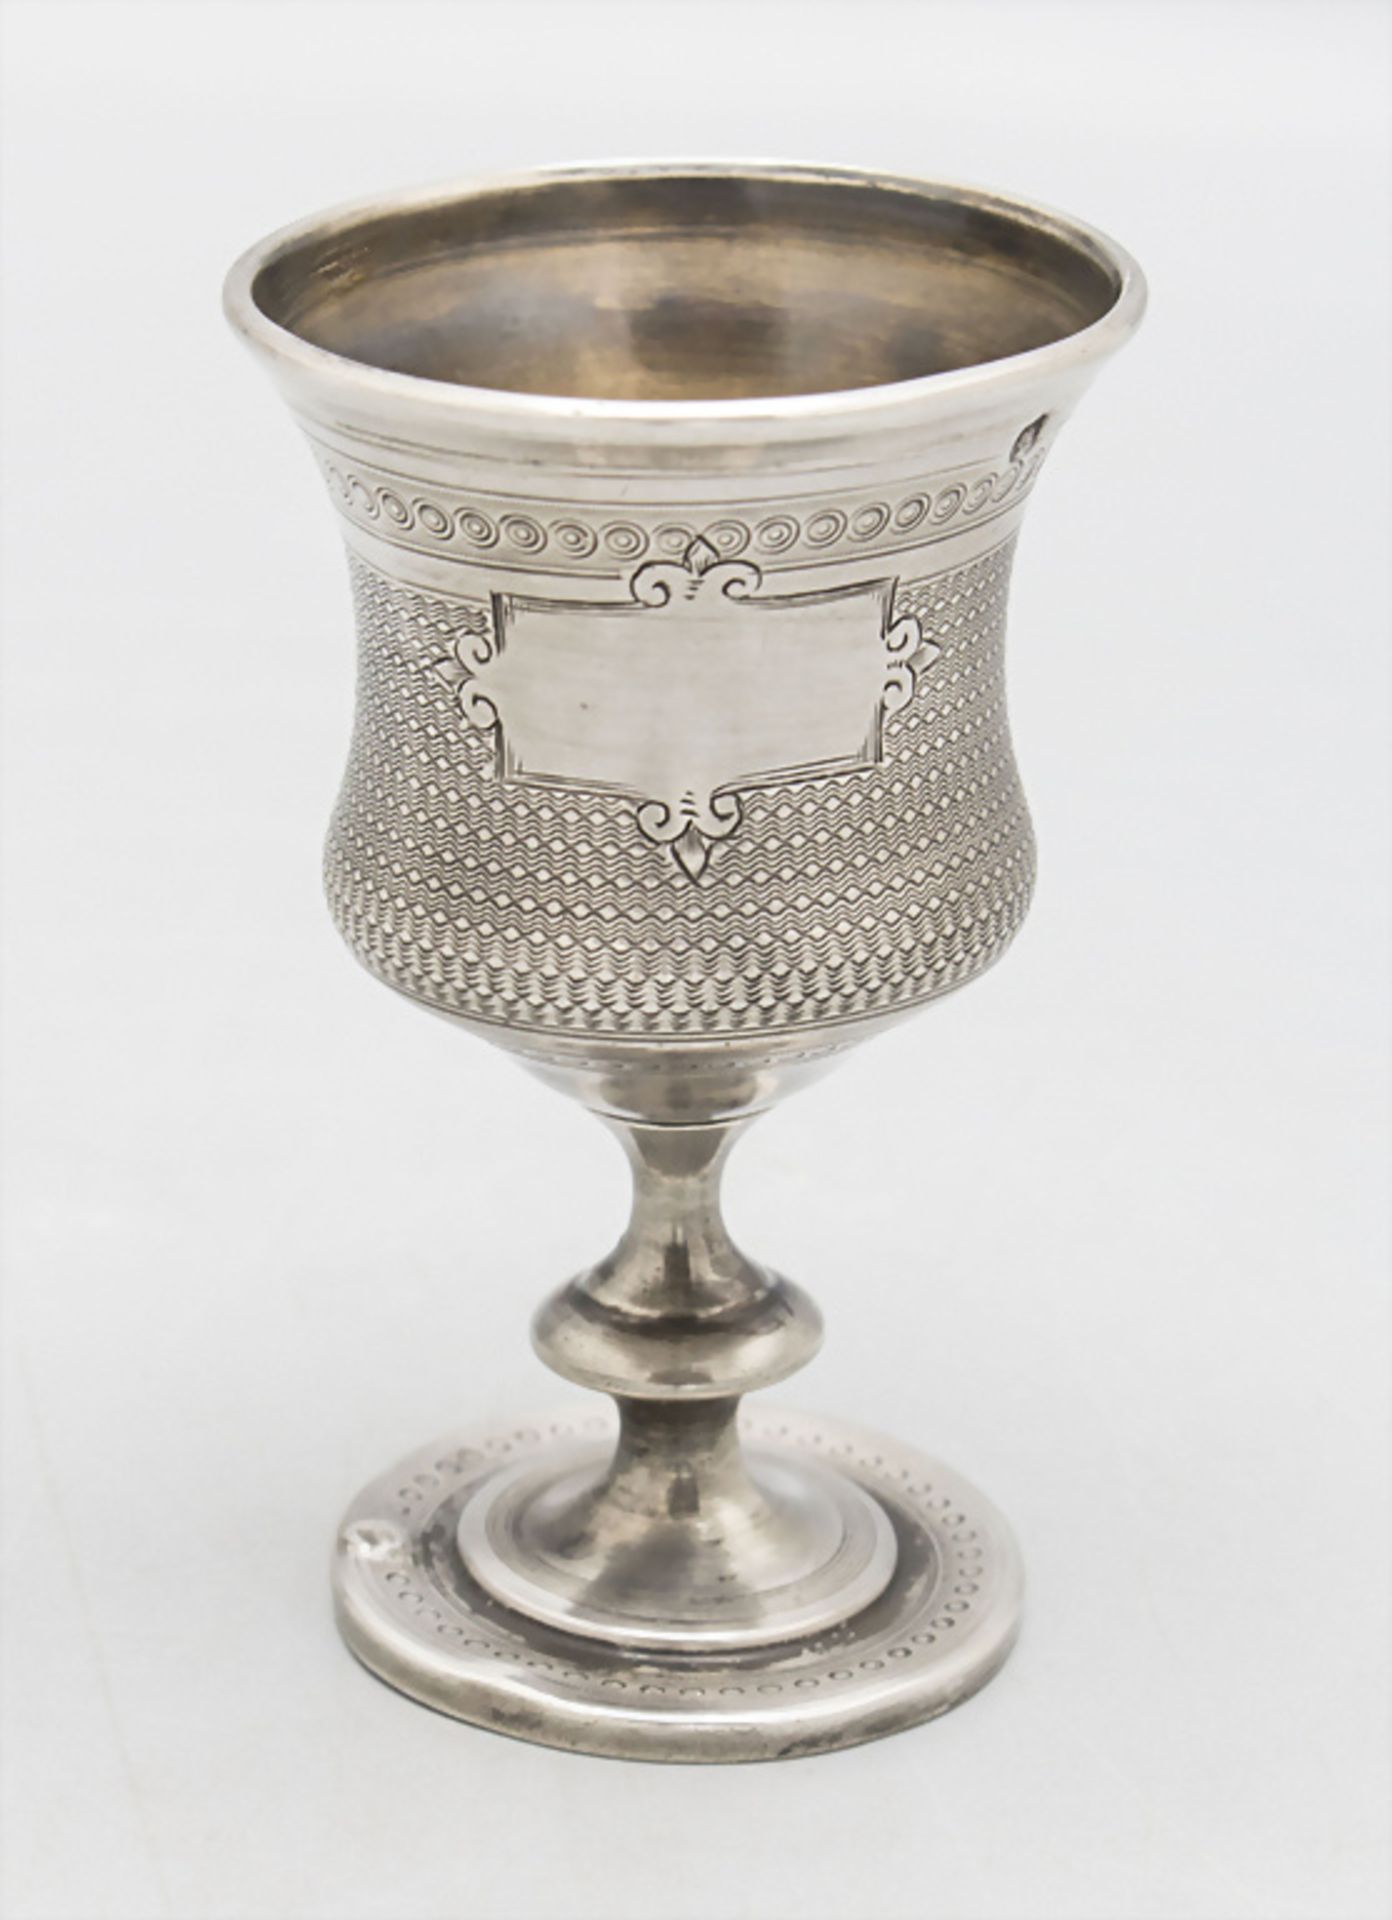 Schnapsbecher / A silver liquor cup, Frankreich, 2. Hälfte 19. Jh.